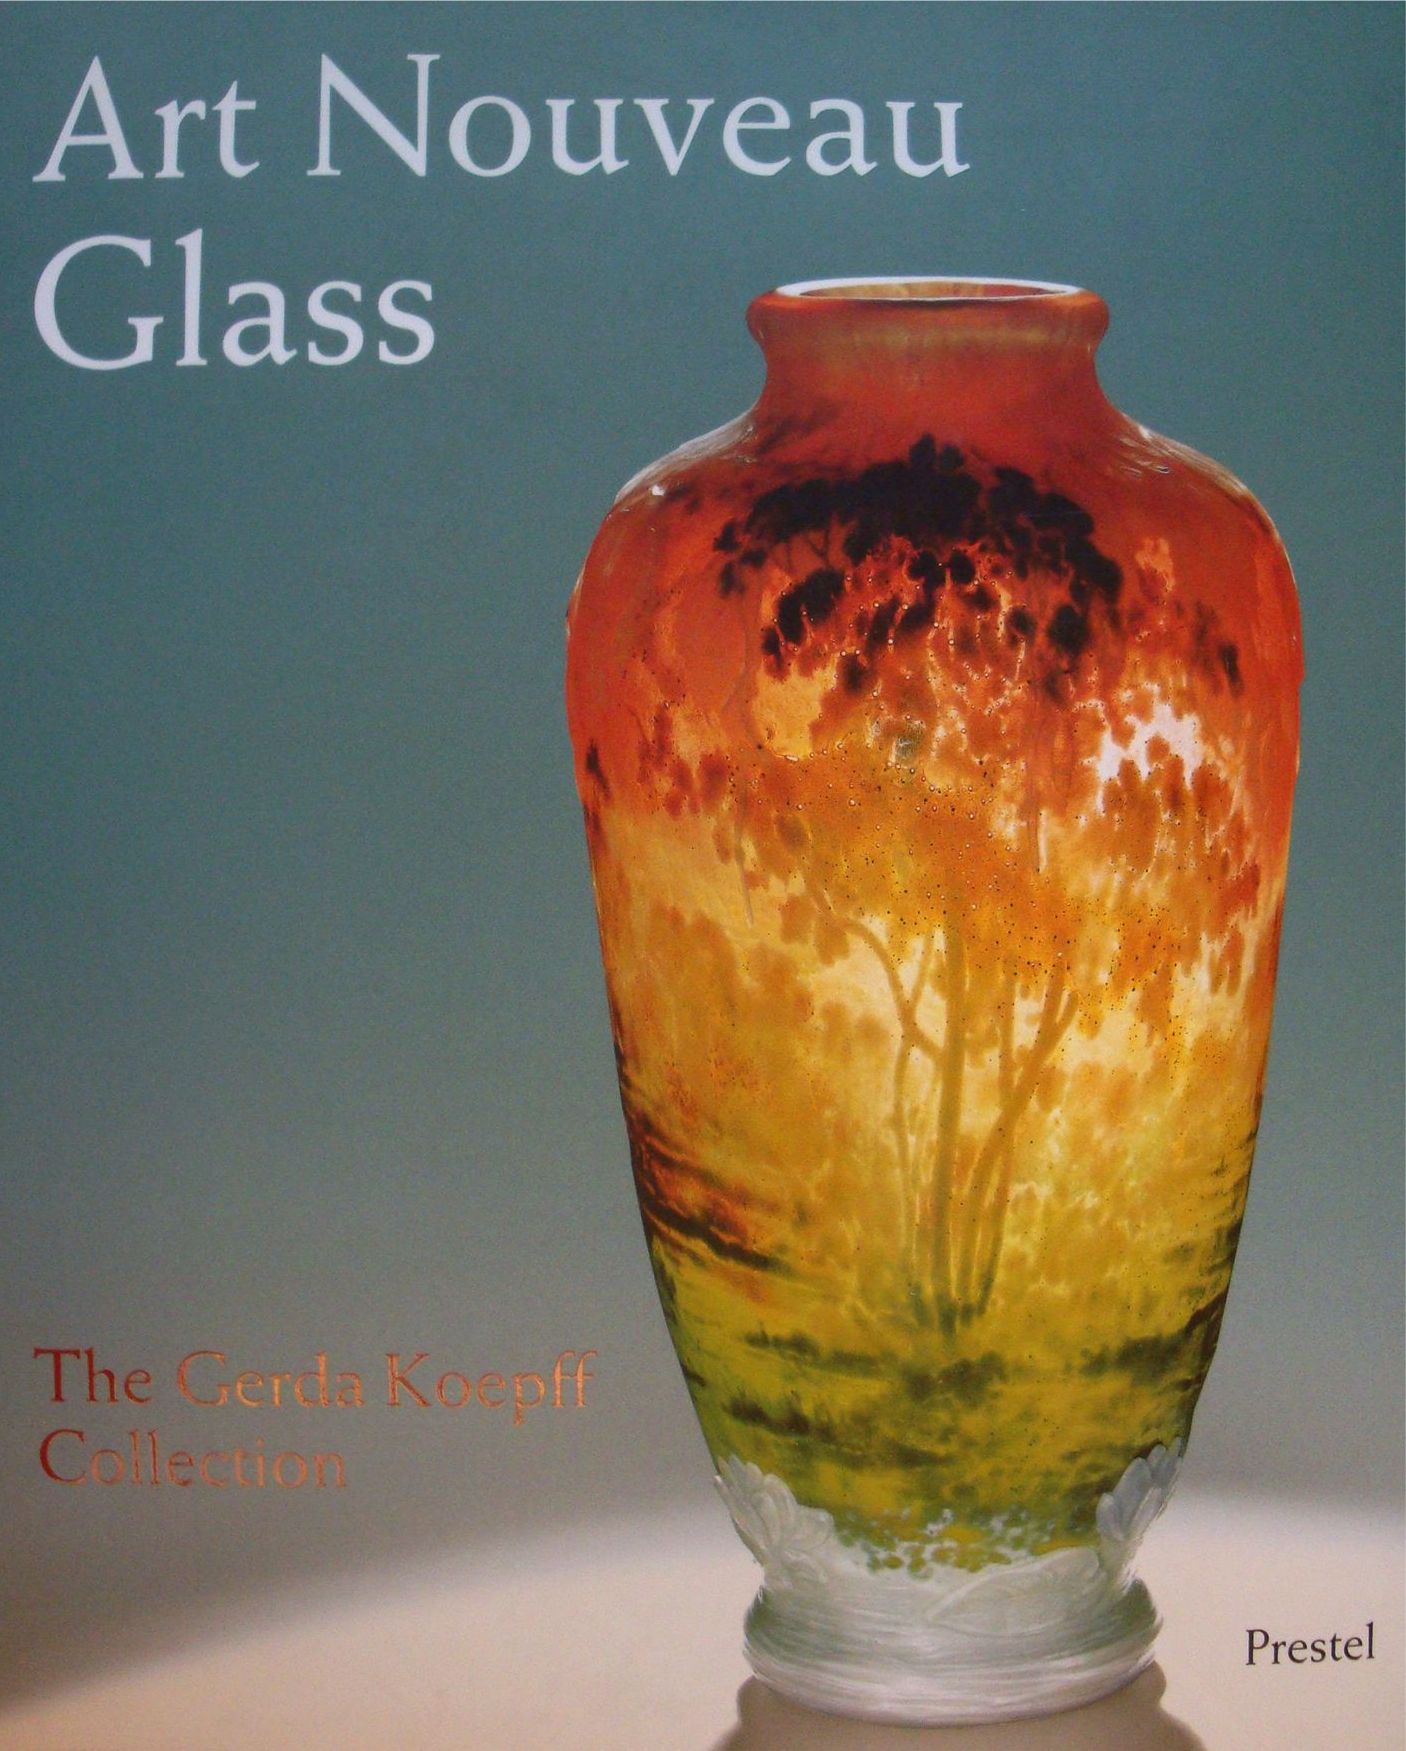 Libellules Vase by Galle and Escalier de Cristal